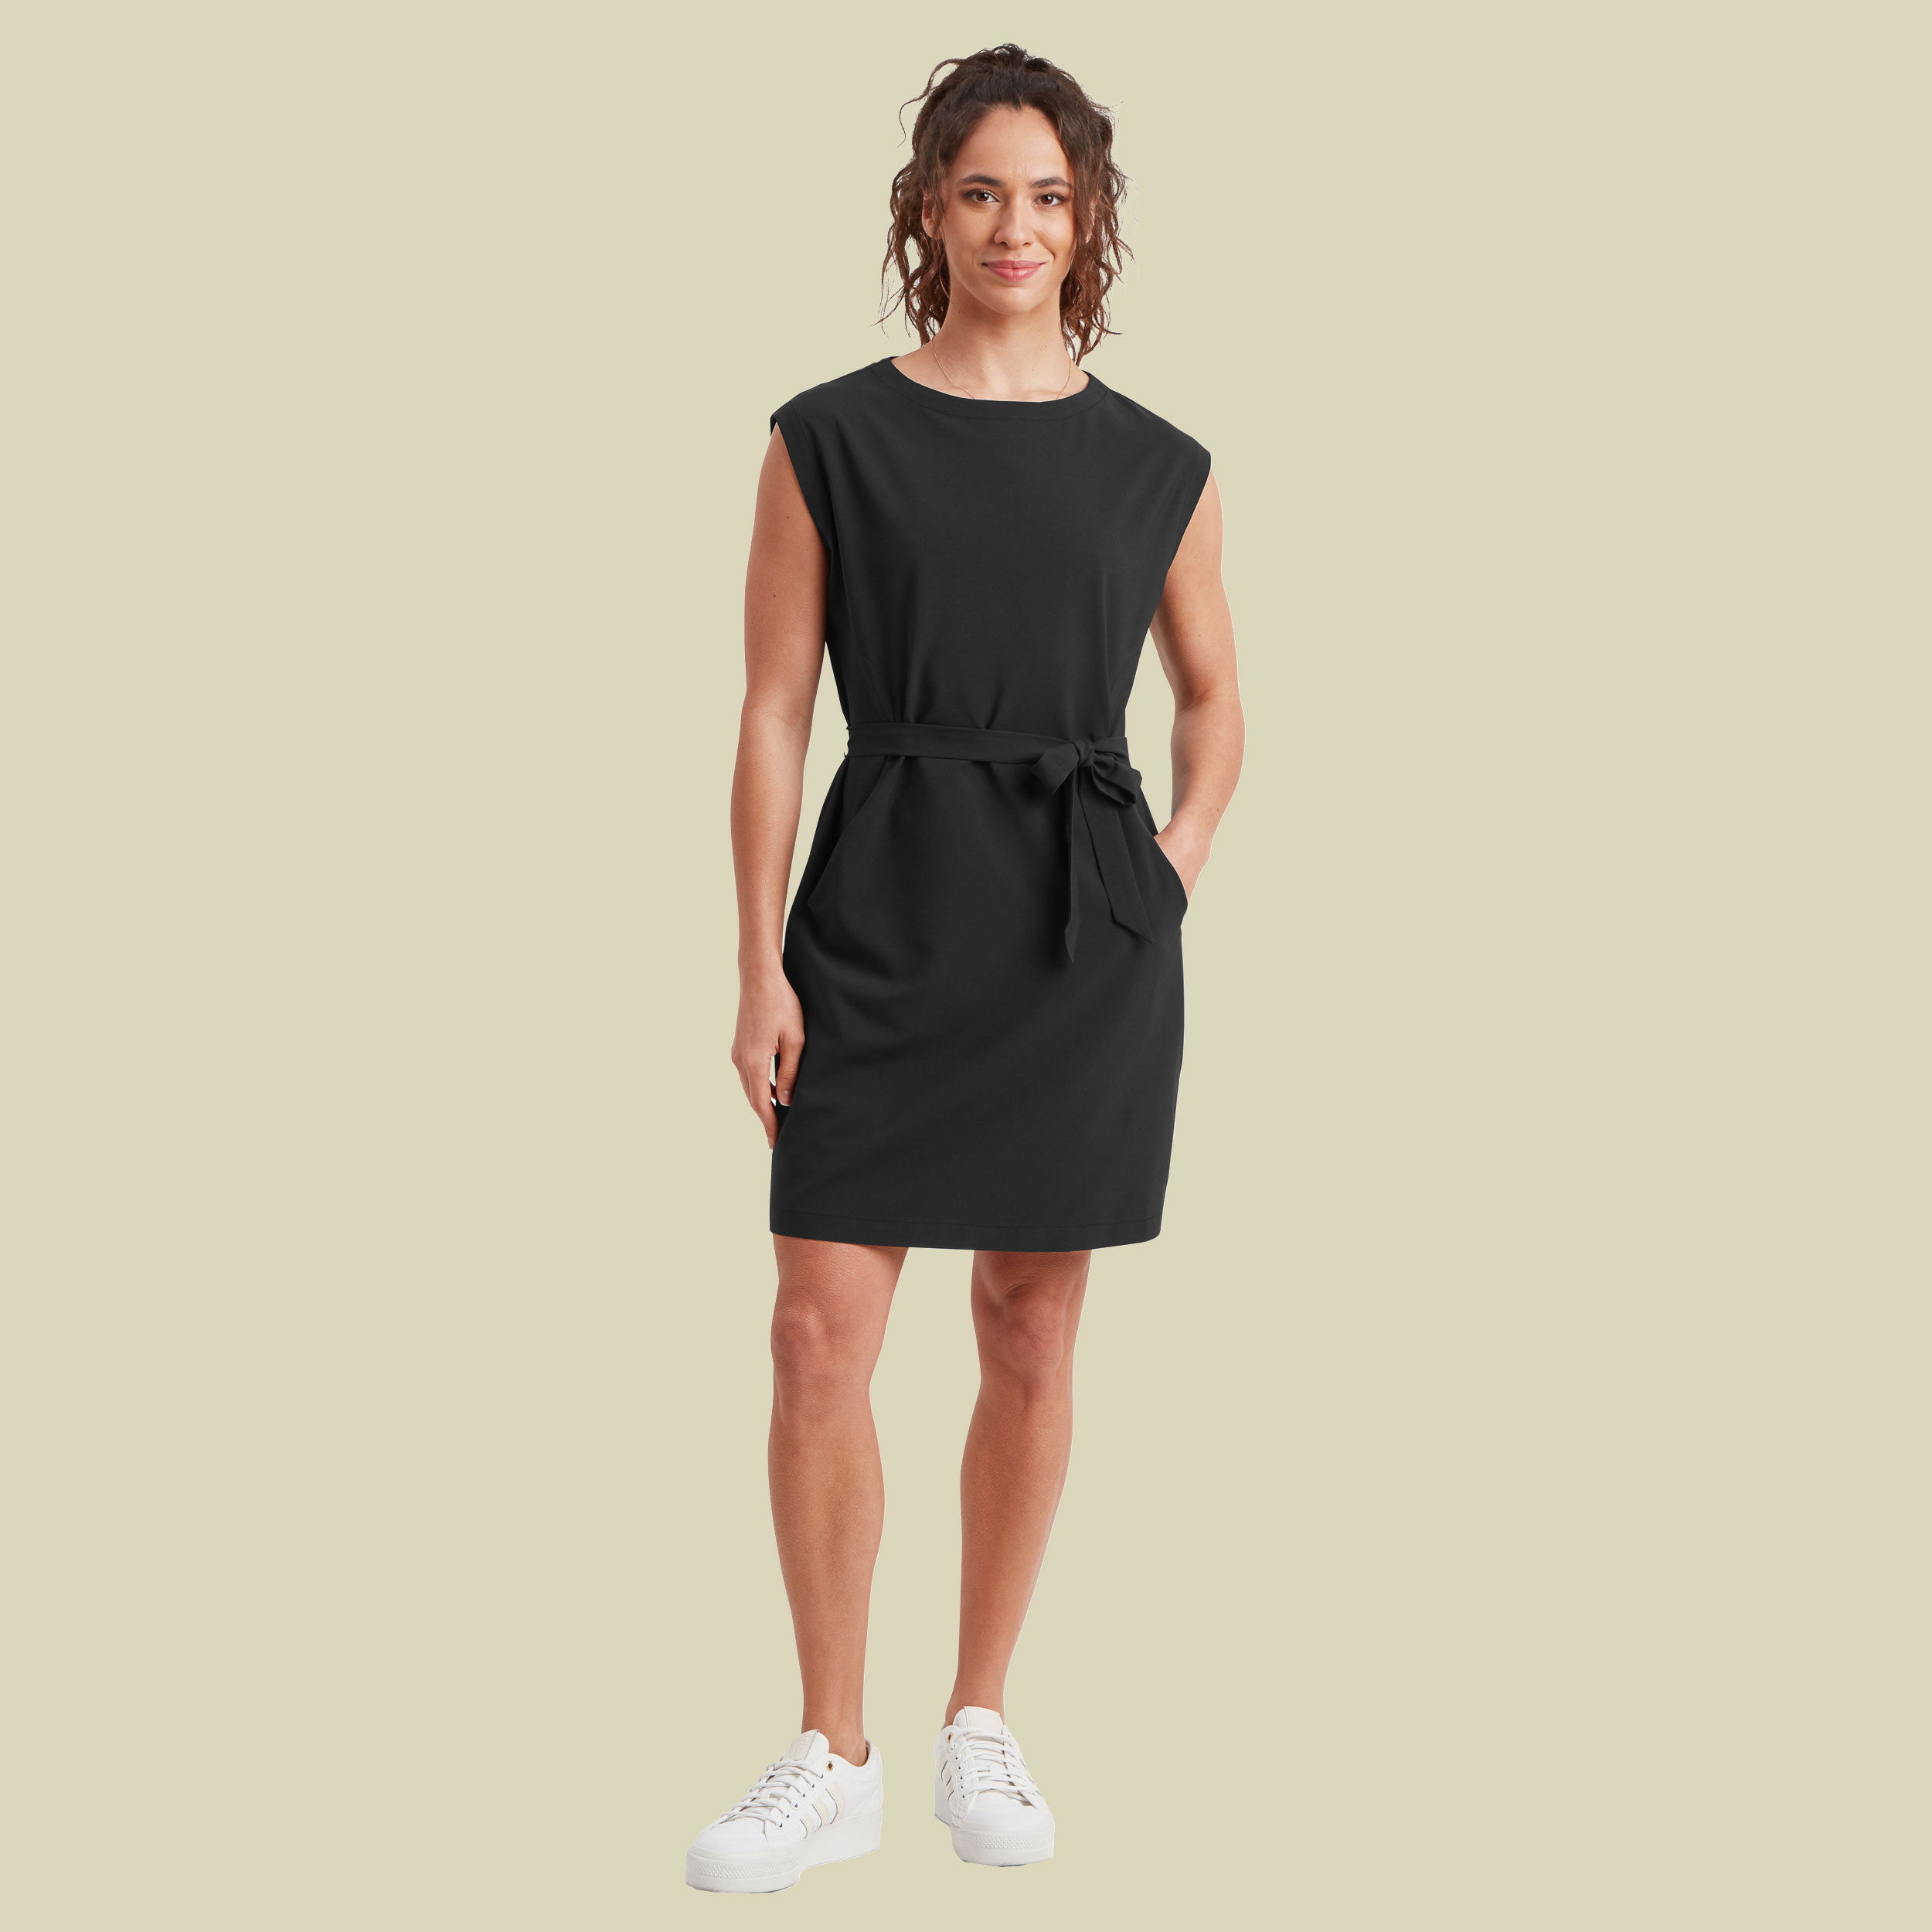 Sajilo Travel Dress XS schwarz - Farbe black